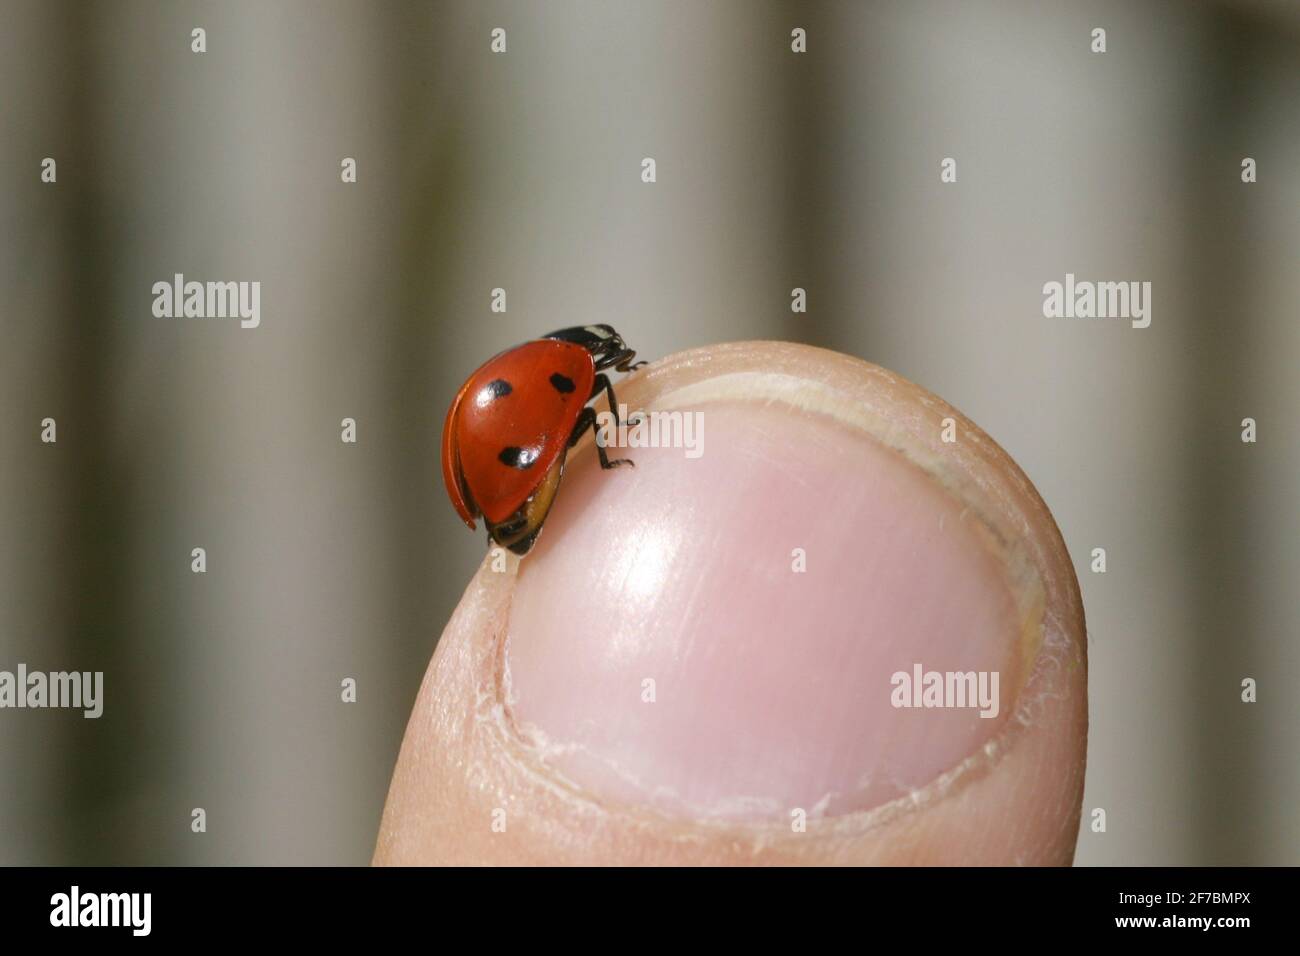 Marienkäfer mit sieben Flecken, Marienkäfer mit sieben Flecken, Marienkäfer mit 7 Flecken (Coccinella septempunctata), sitzt auf einem Finger, Österreich Stockfoto